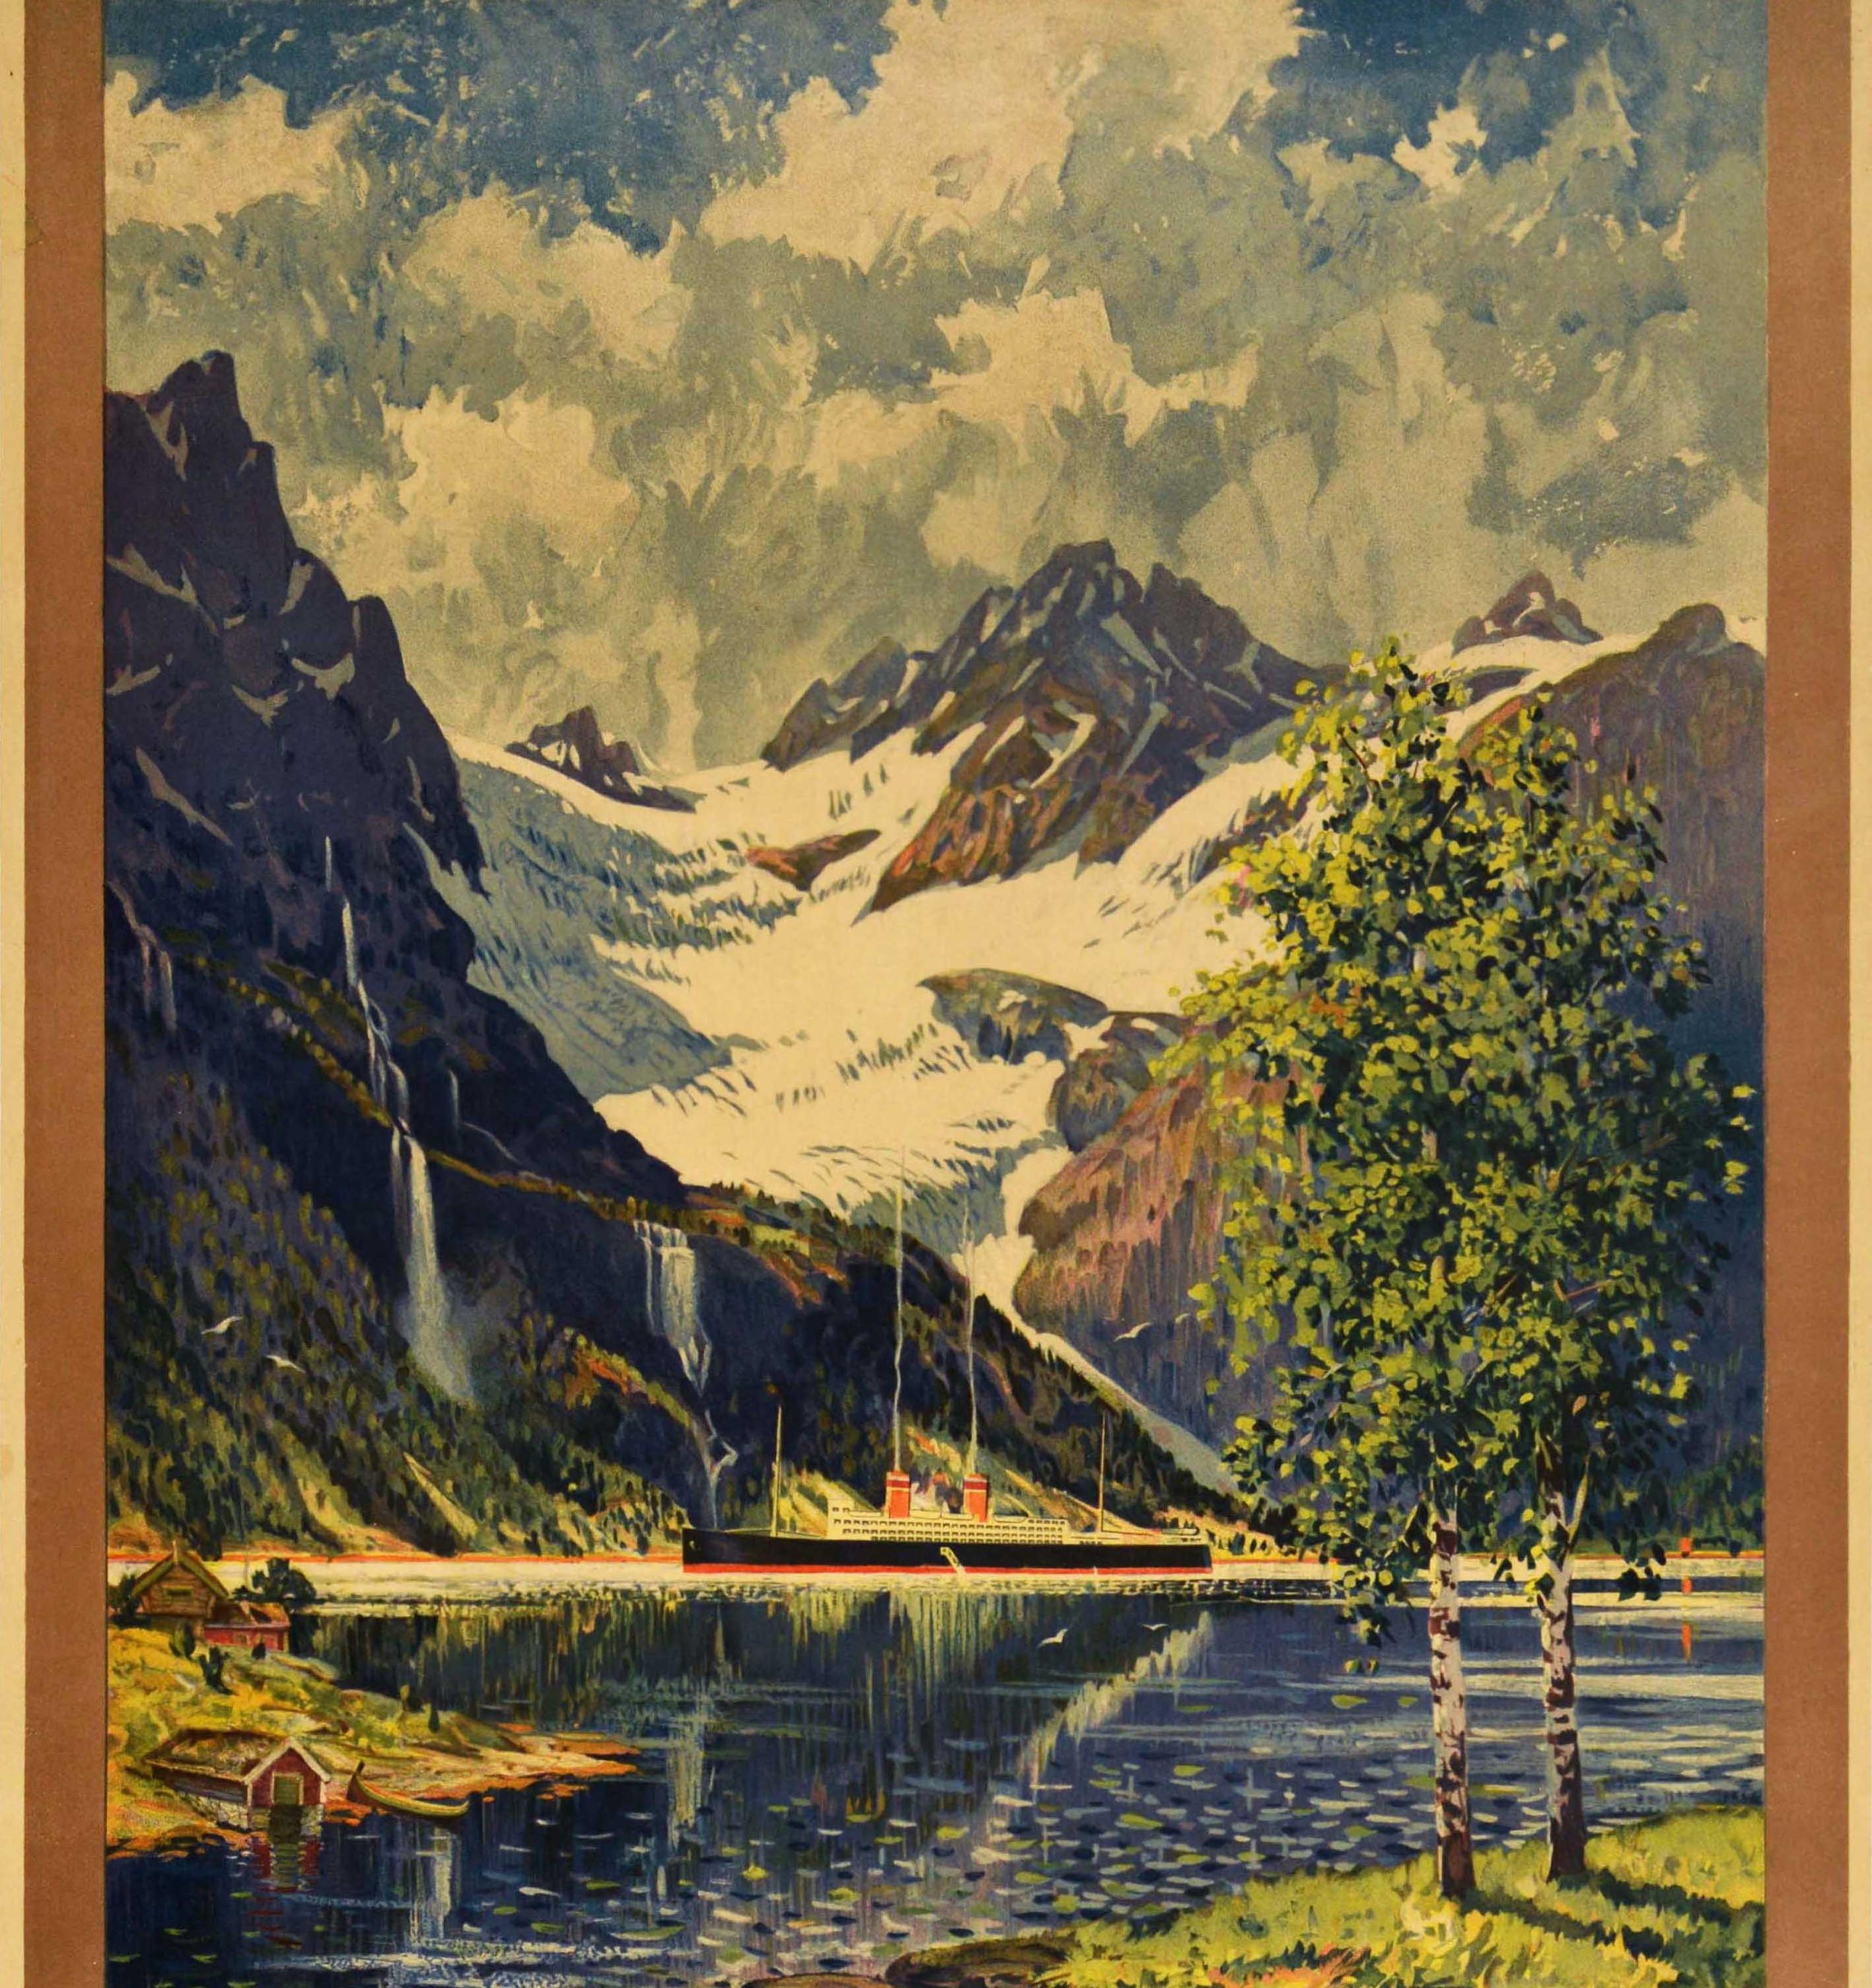 Affiche publicitaire originale pour les voyages en train en Norvège, saison d'été juin-septembre, avec une superbe illustration de Benjamin Blessum (1877-1954) représentant un fjord panoramique du paysage norvégien avec un lac au premier plan, des